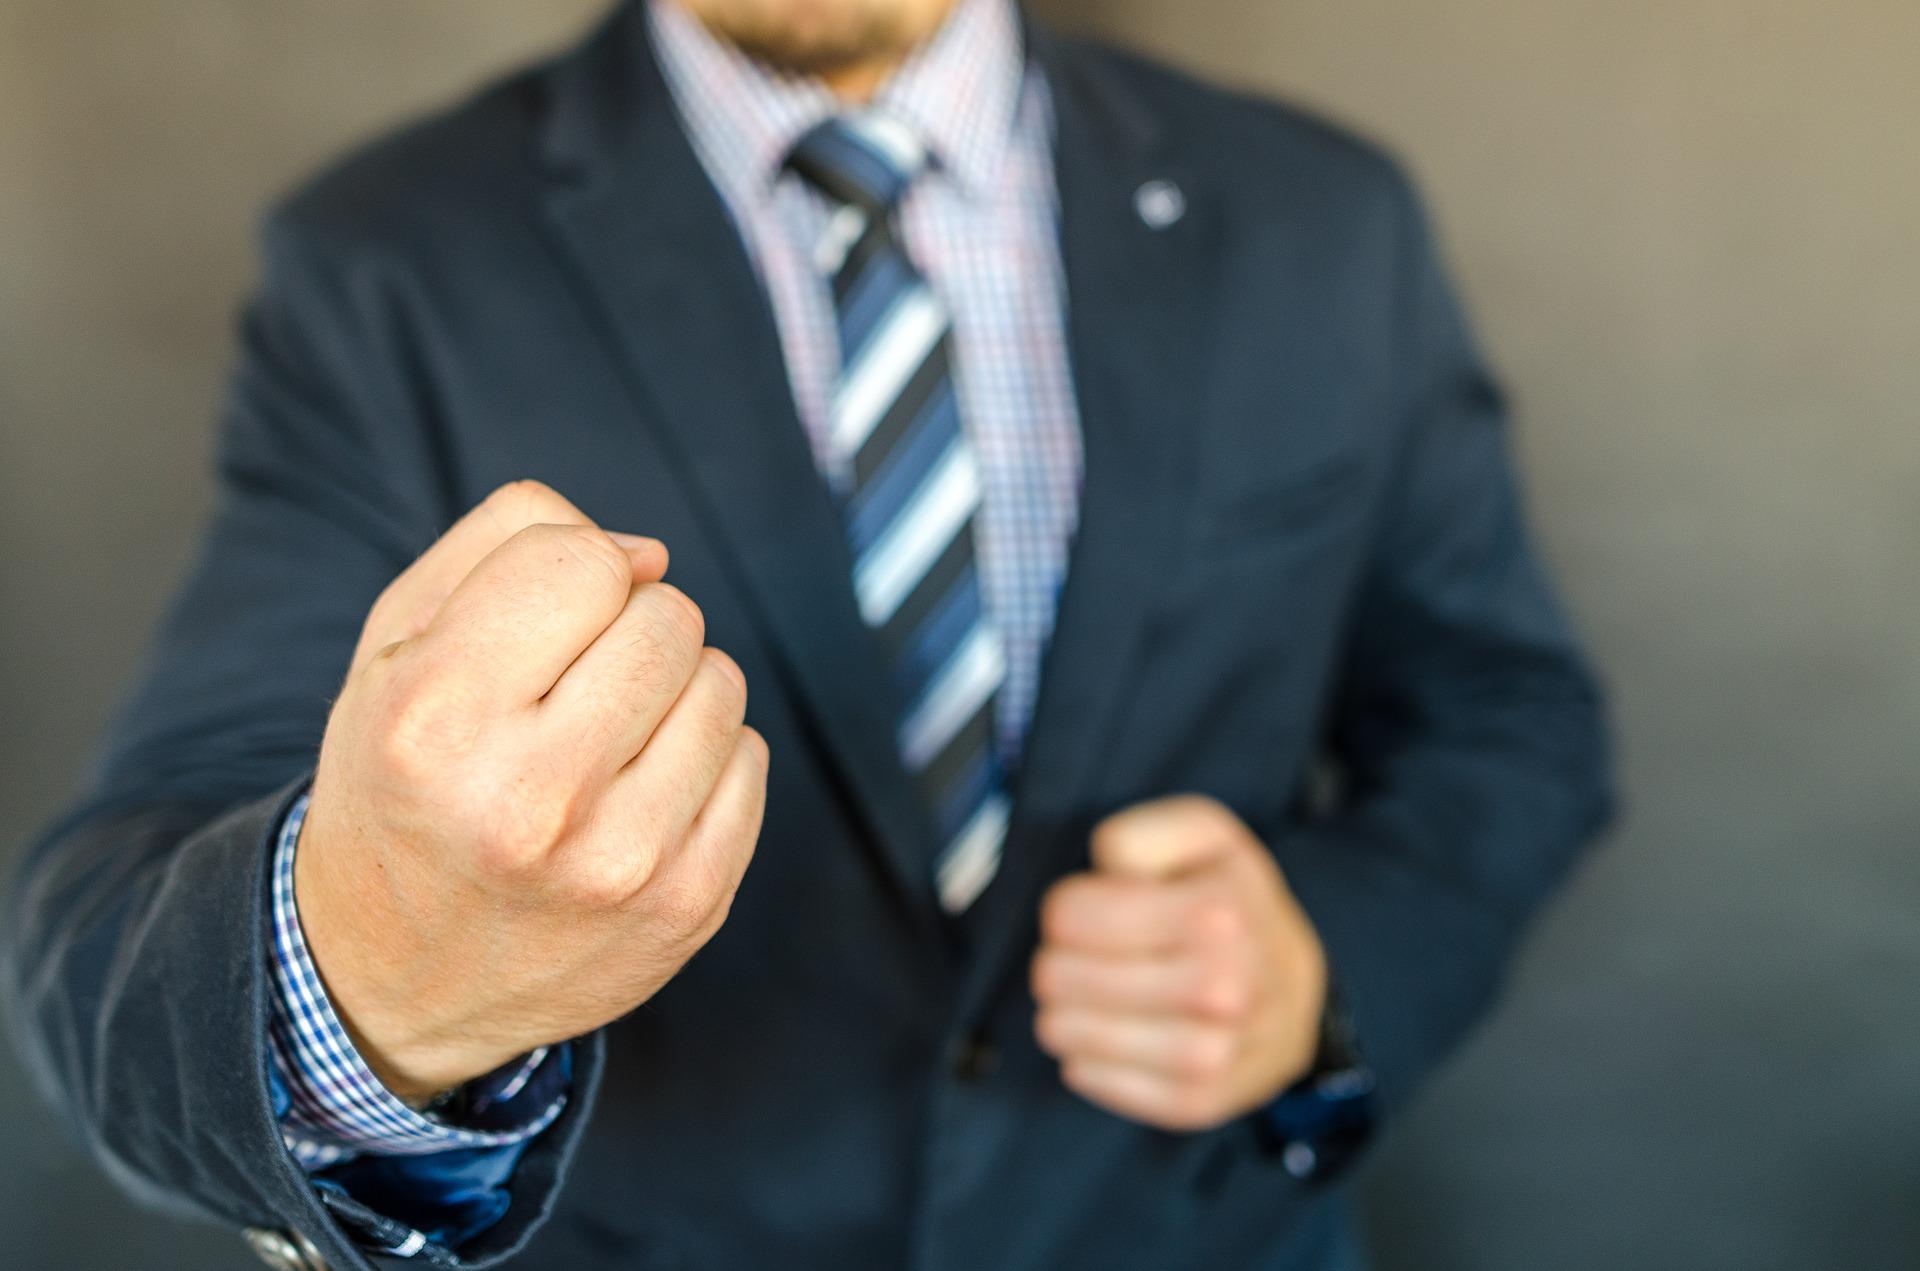 Un hombre vestido de traje amenazando con sus puños. | Foto: Pixabay